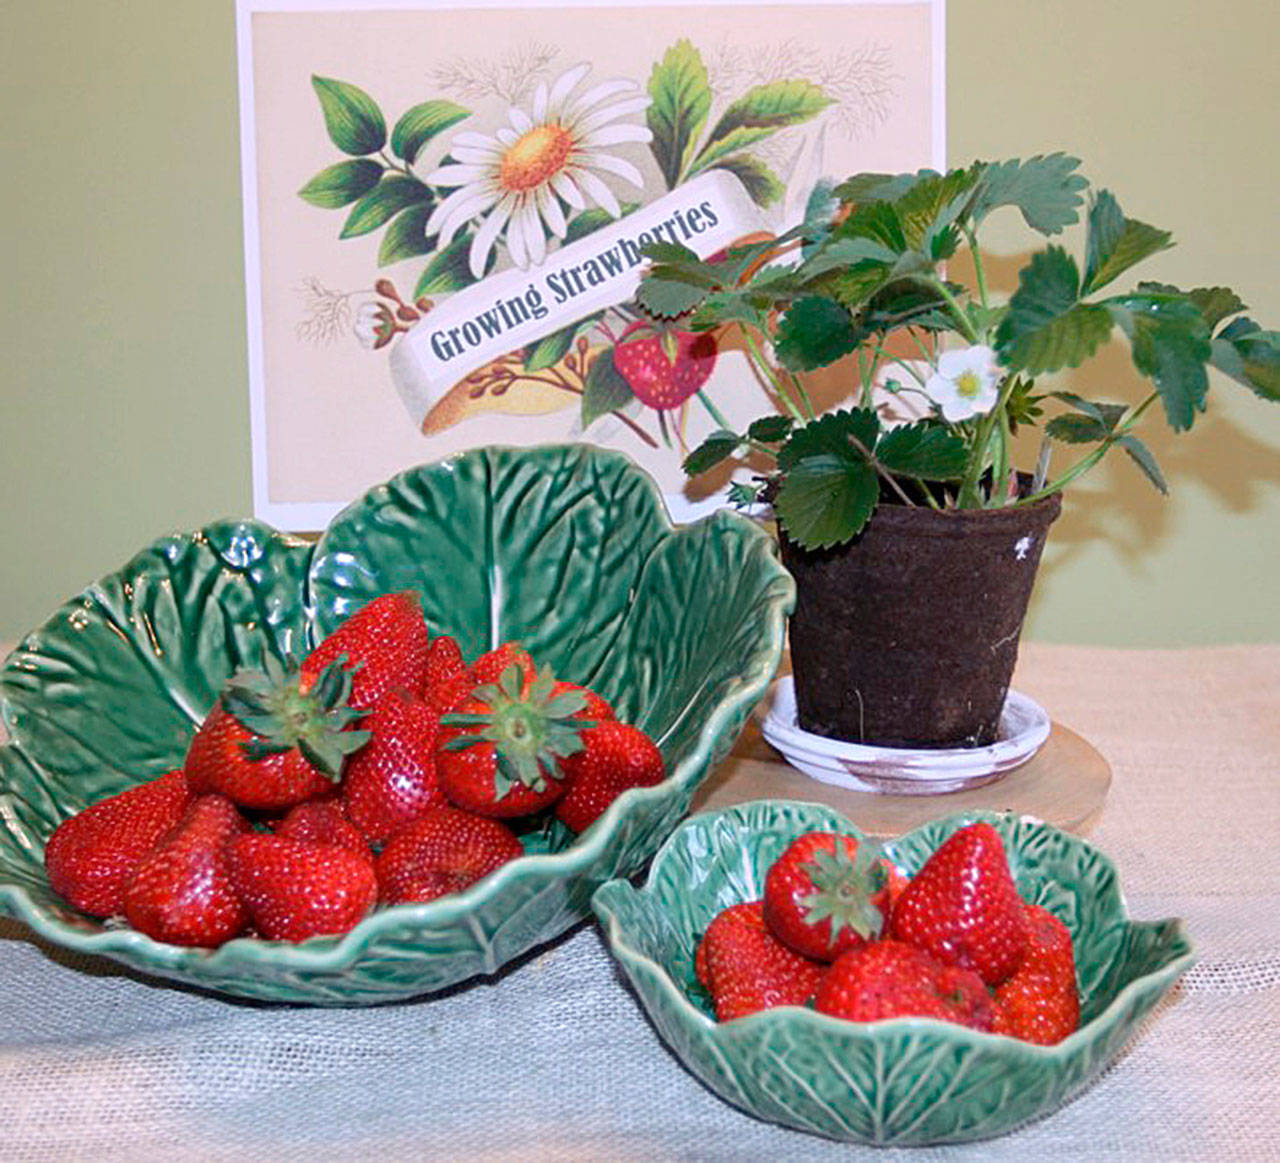 Get It Growing: Growing strawberries